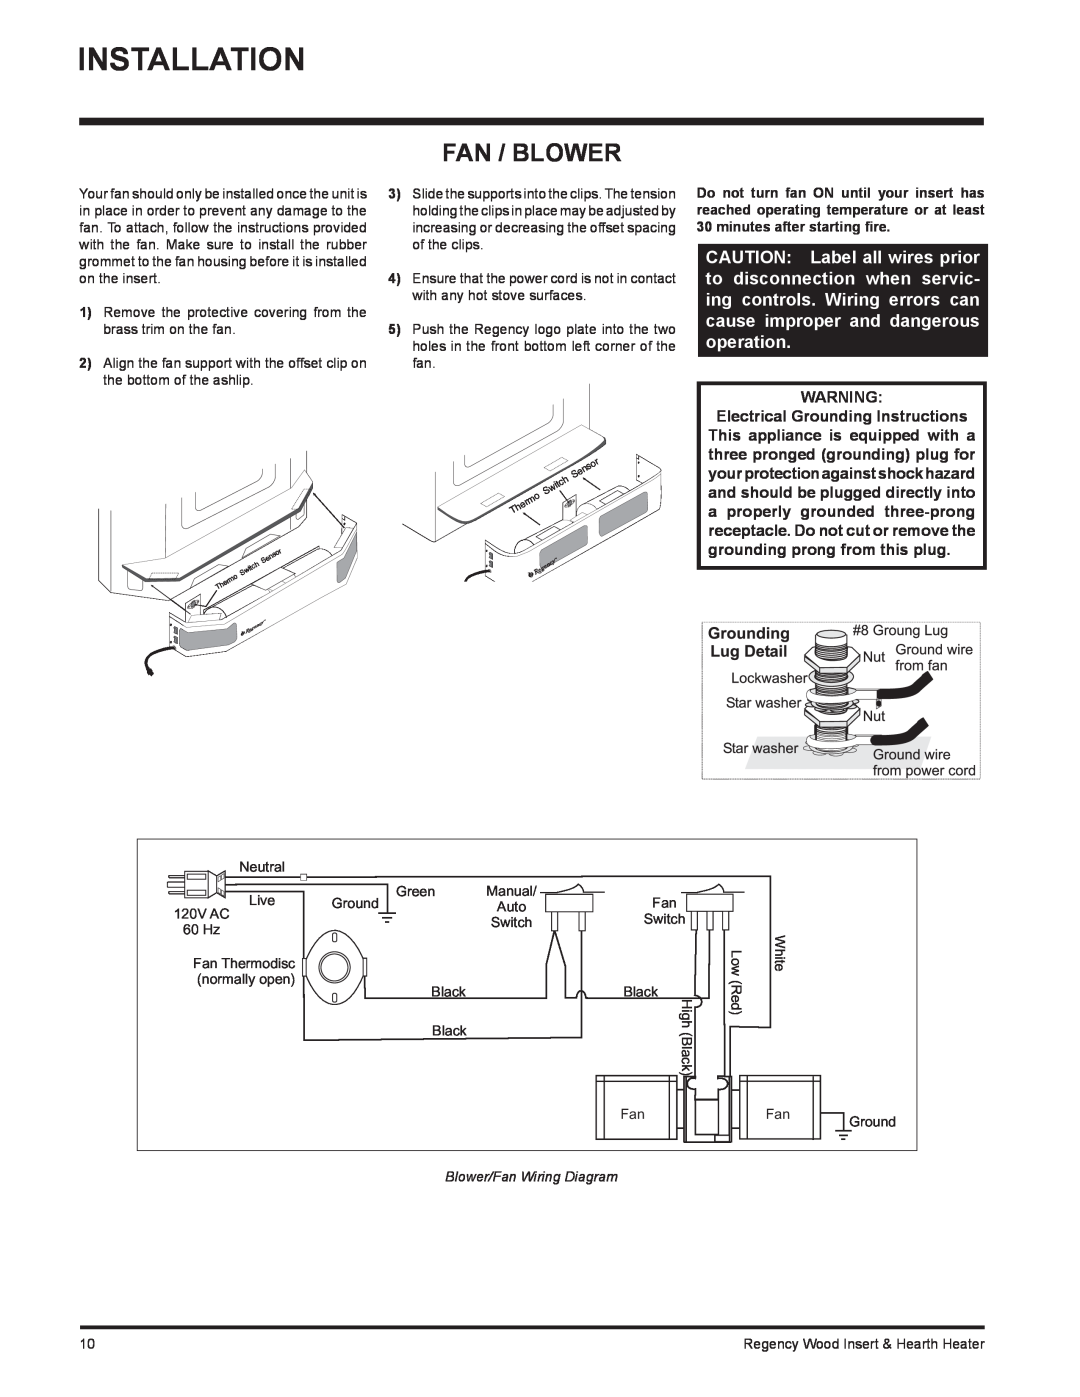 Regency H2100, I3100L installation manual Installation, Fan / Blower, Blower/Fan Wiring Diagram 